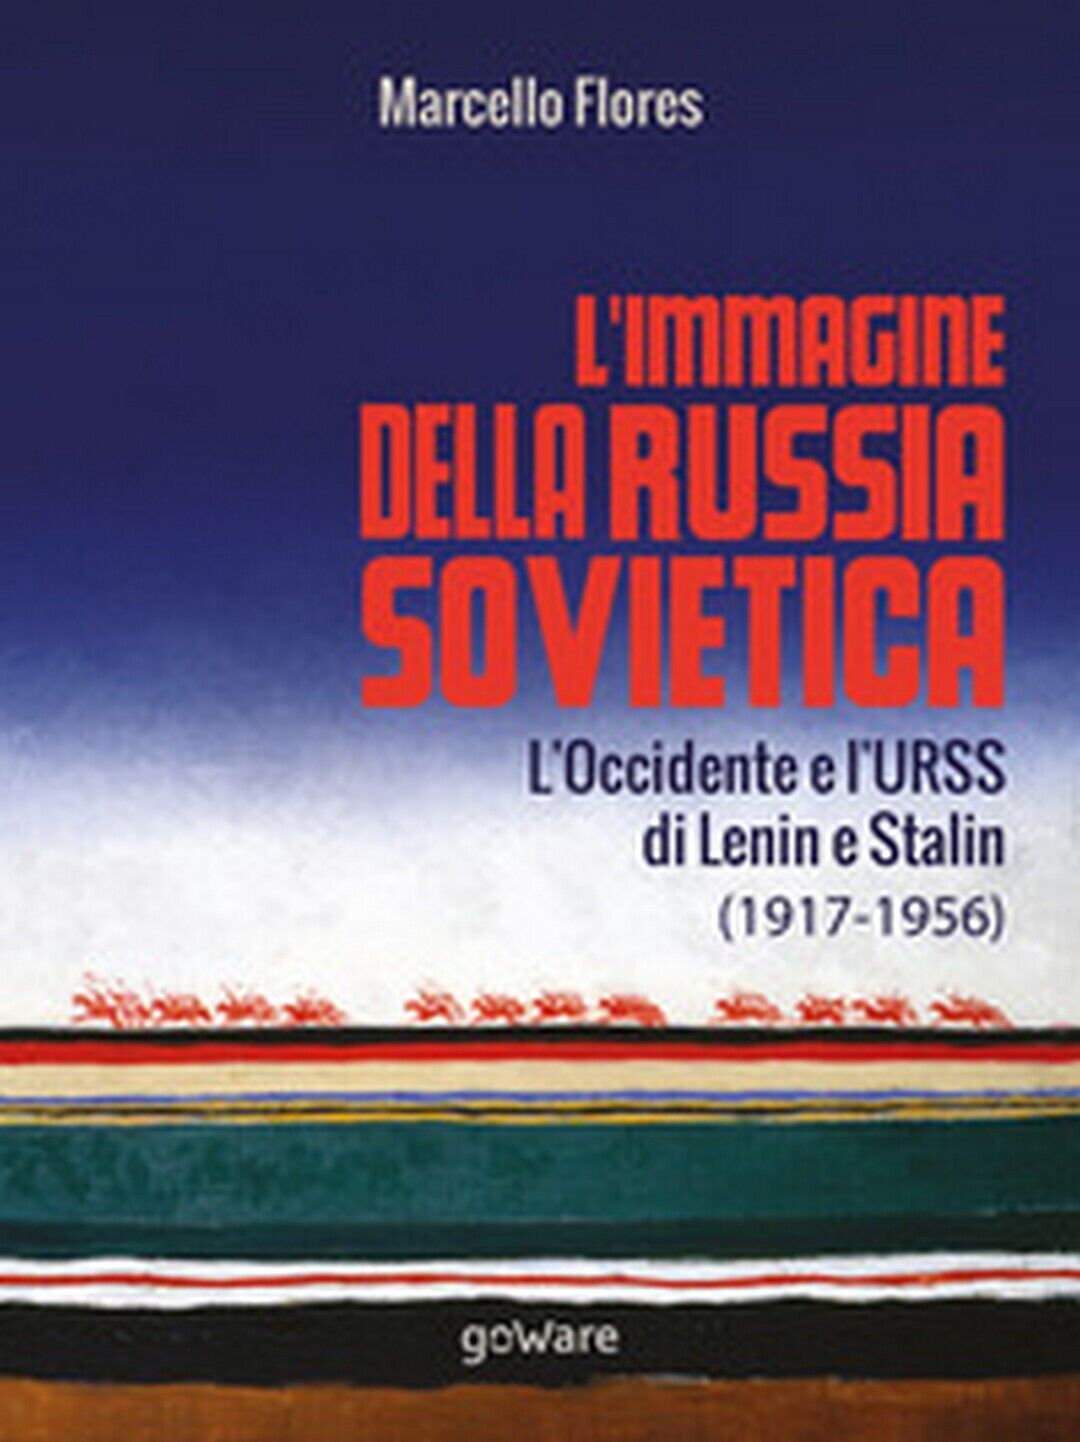 L'immagine della Russia sovietica. L'Occidente e L'URSS di Lenin e Stalin 